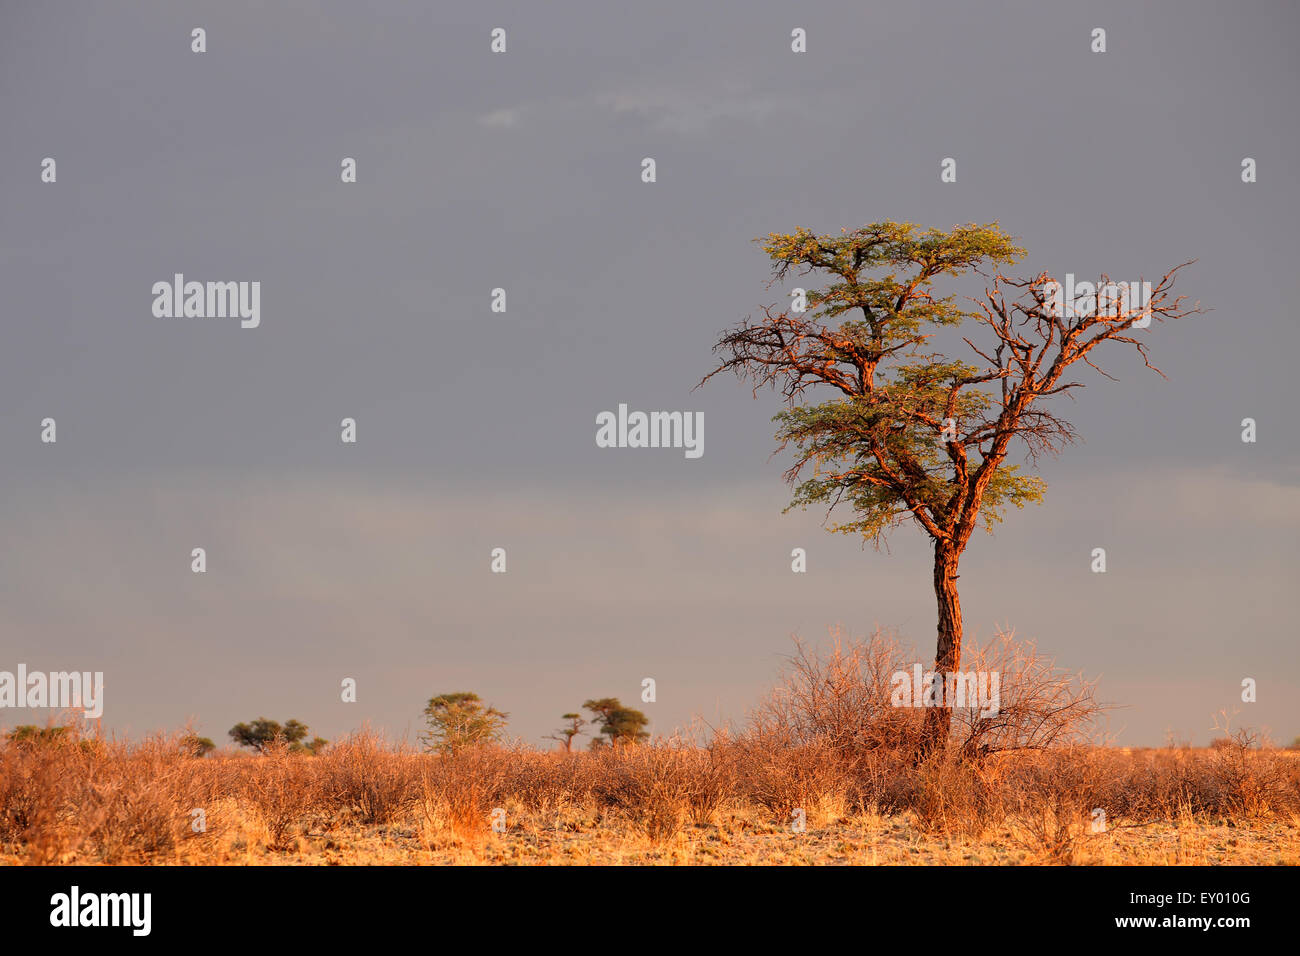 Paysage avec un camelthorn arbre Acacia (Acacia erioloba), désert du Kalahari, Afrique du Sud Banque D'Images